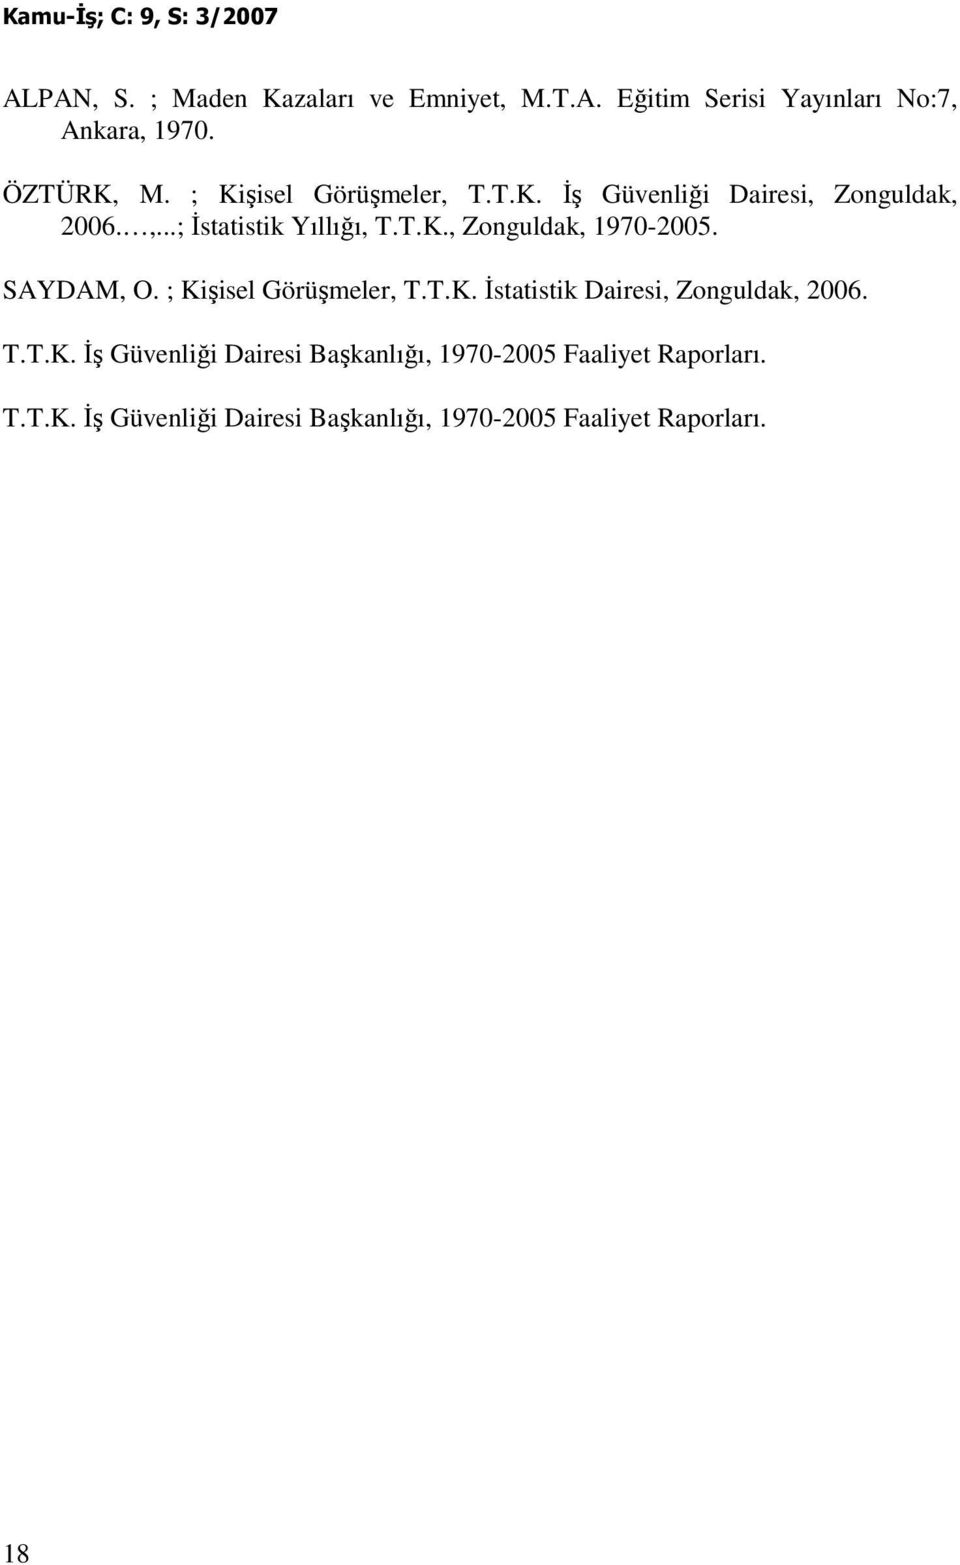 SAYDAM, O. ; Kişisel Görüşmeler, T.T.K. Đstatistik Dairesi, Zonguldak, 2006. T.T.K. Đş Güvenliği Dairesi Başkanlığı, 1970-2005 Faaliyet Raporları.